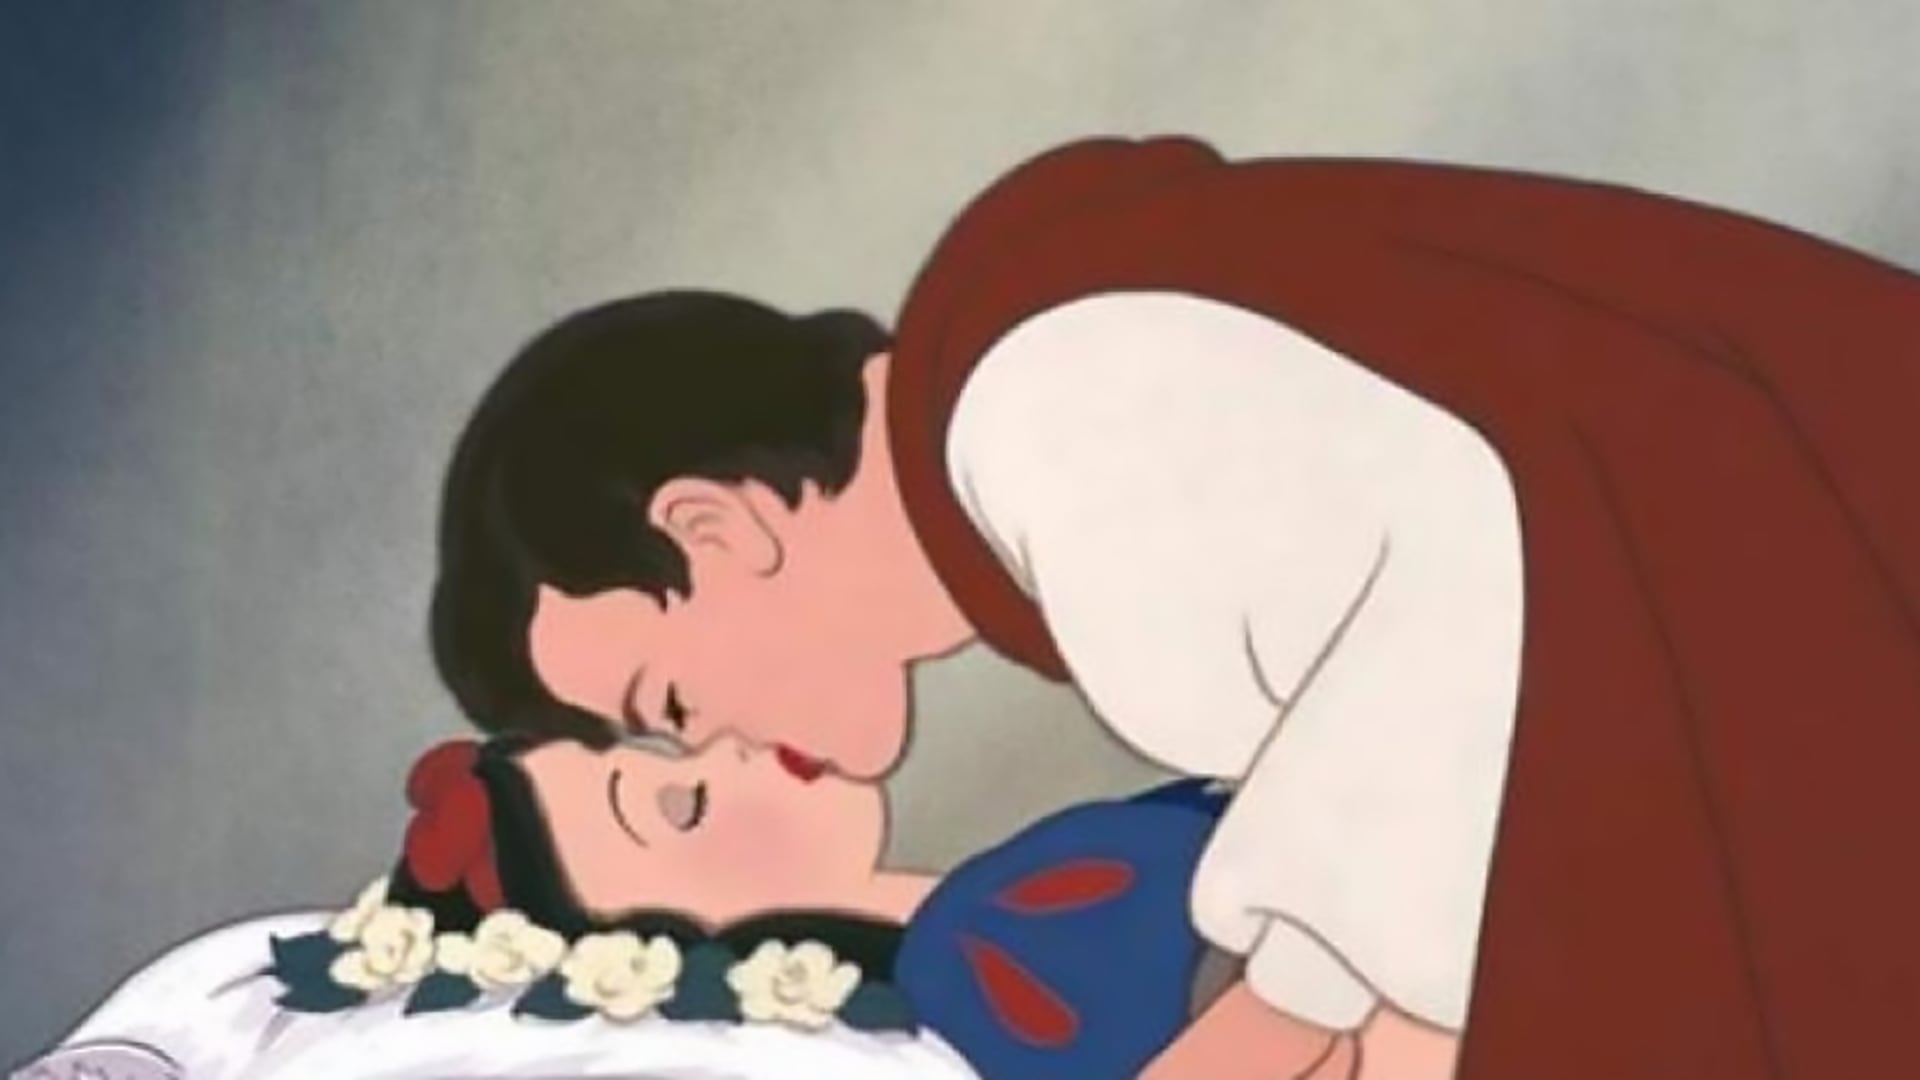 El beso "no consentido" del Príncipe a Blancanieves